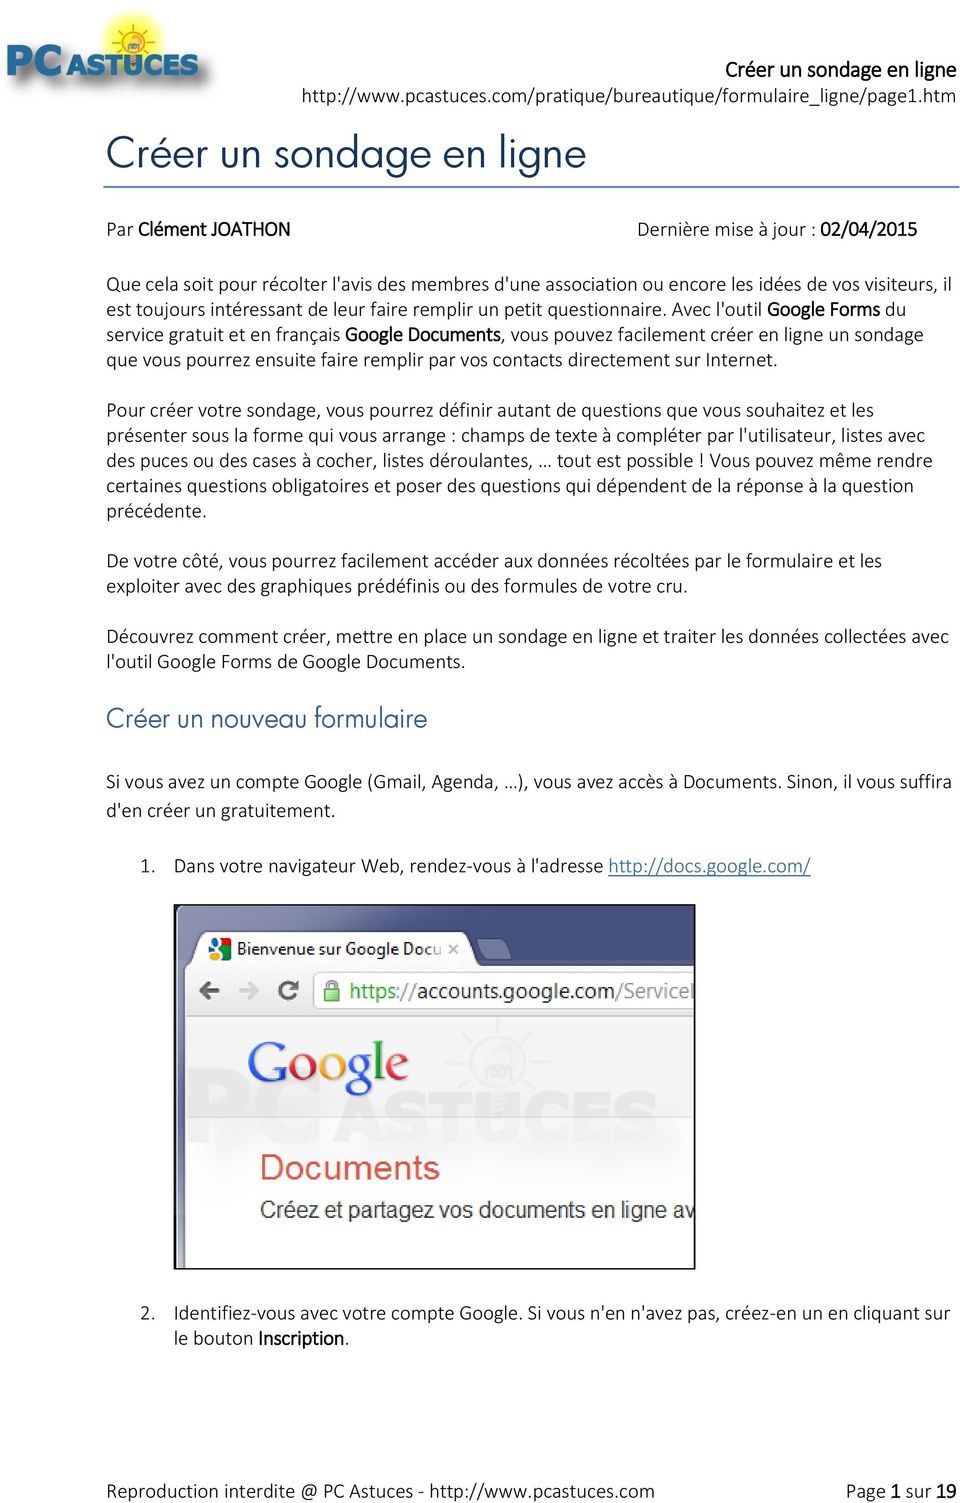 Avec l'outil Google Forms du service gratuit et en français Google Documents, vous pouvez facilement créer en ligne un sondage que vous pourrez ensuite faire remplir par vos contacts directement sur